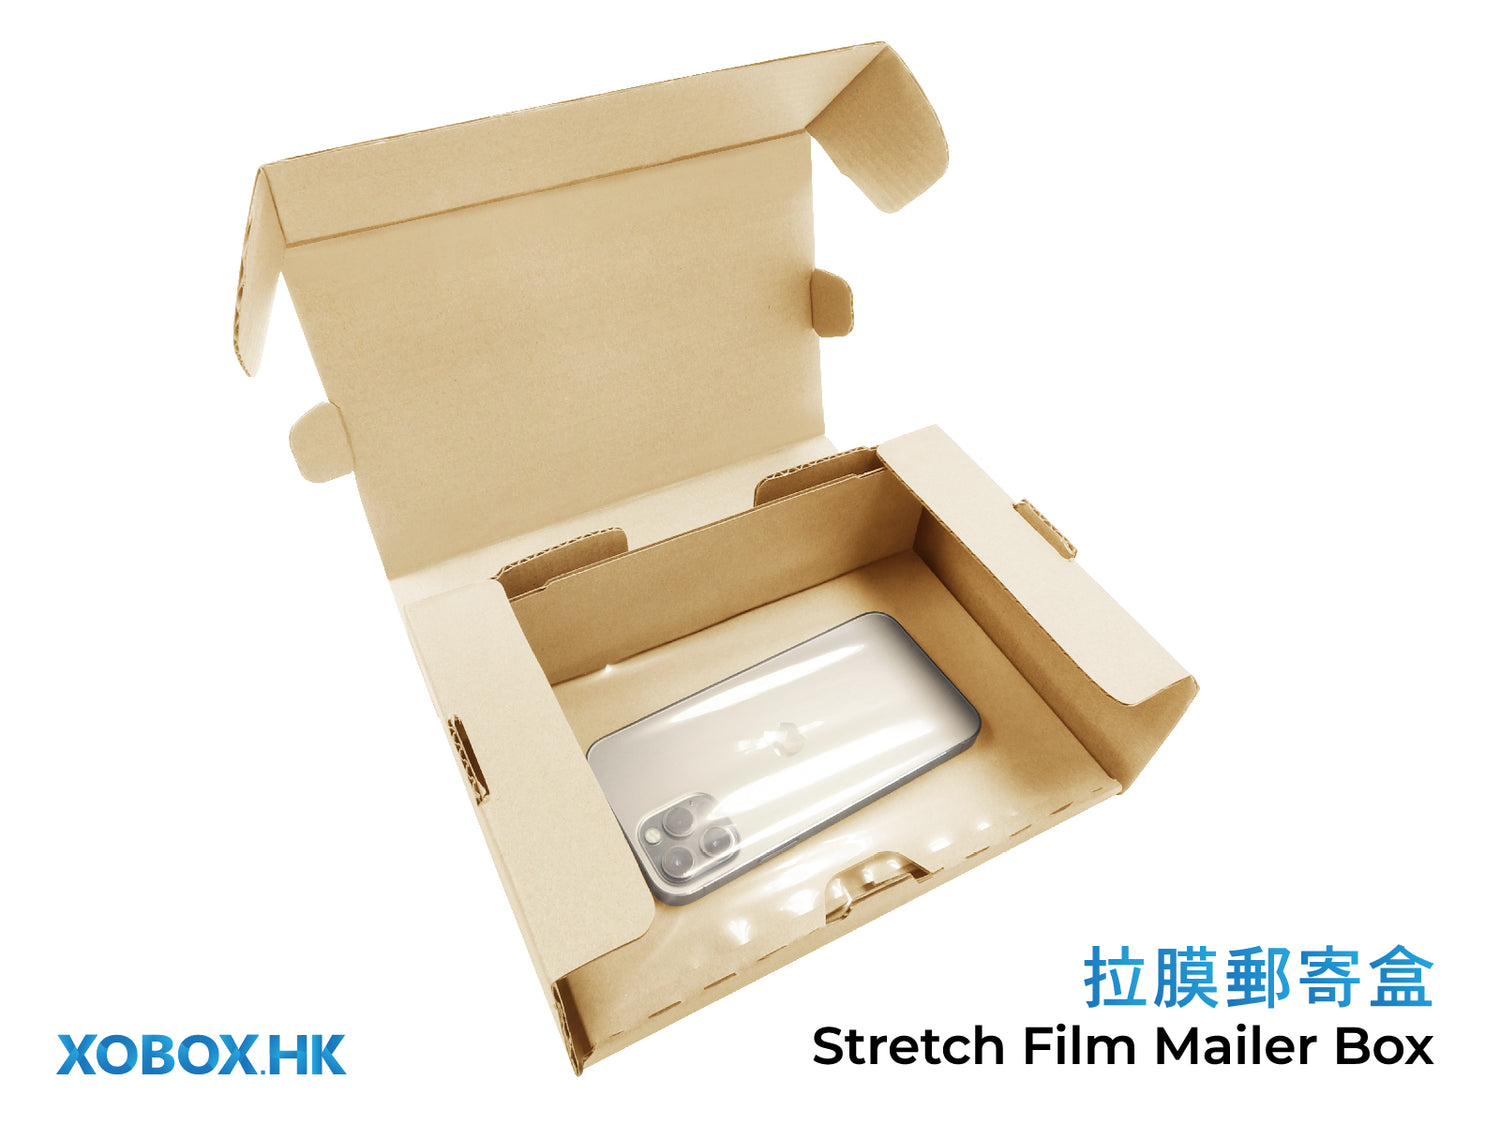 Stretch Film Mailer Box 拉膜郵寄盒